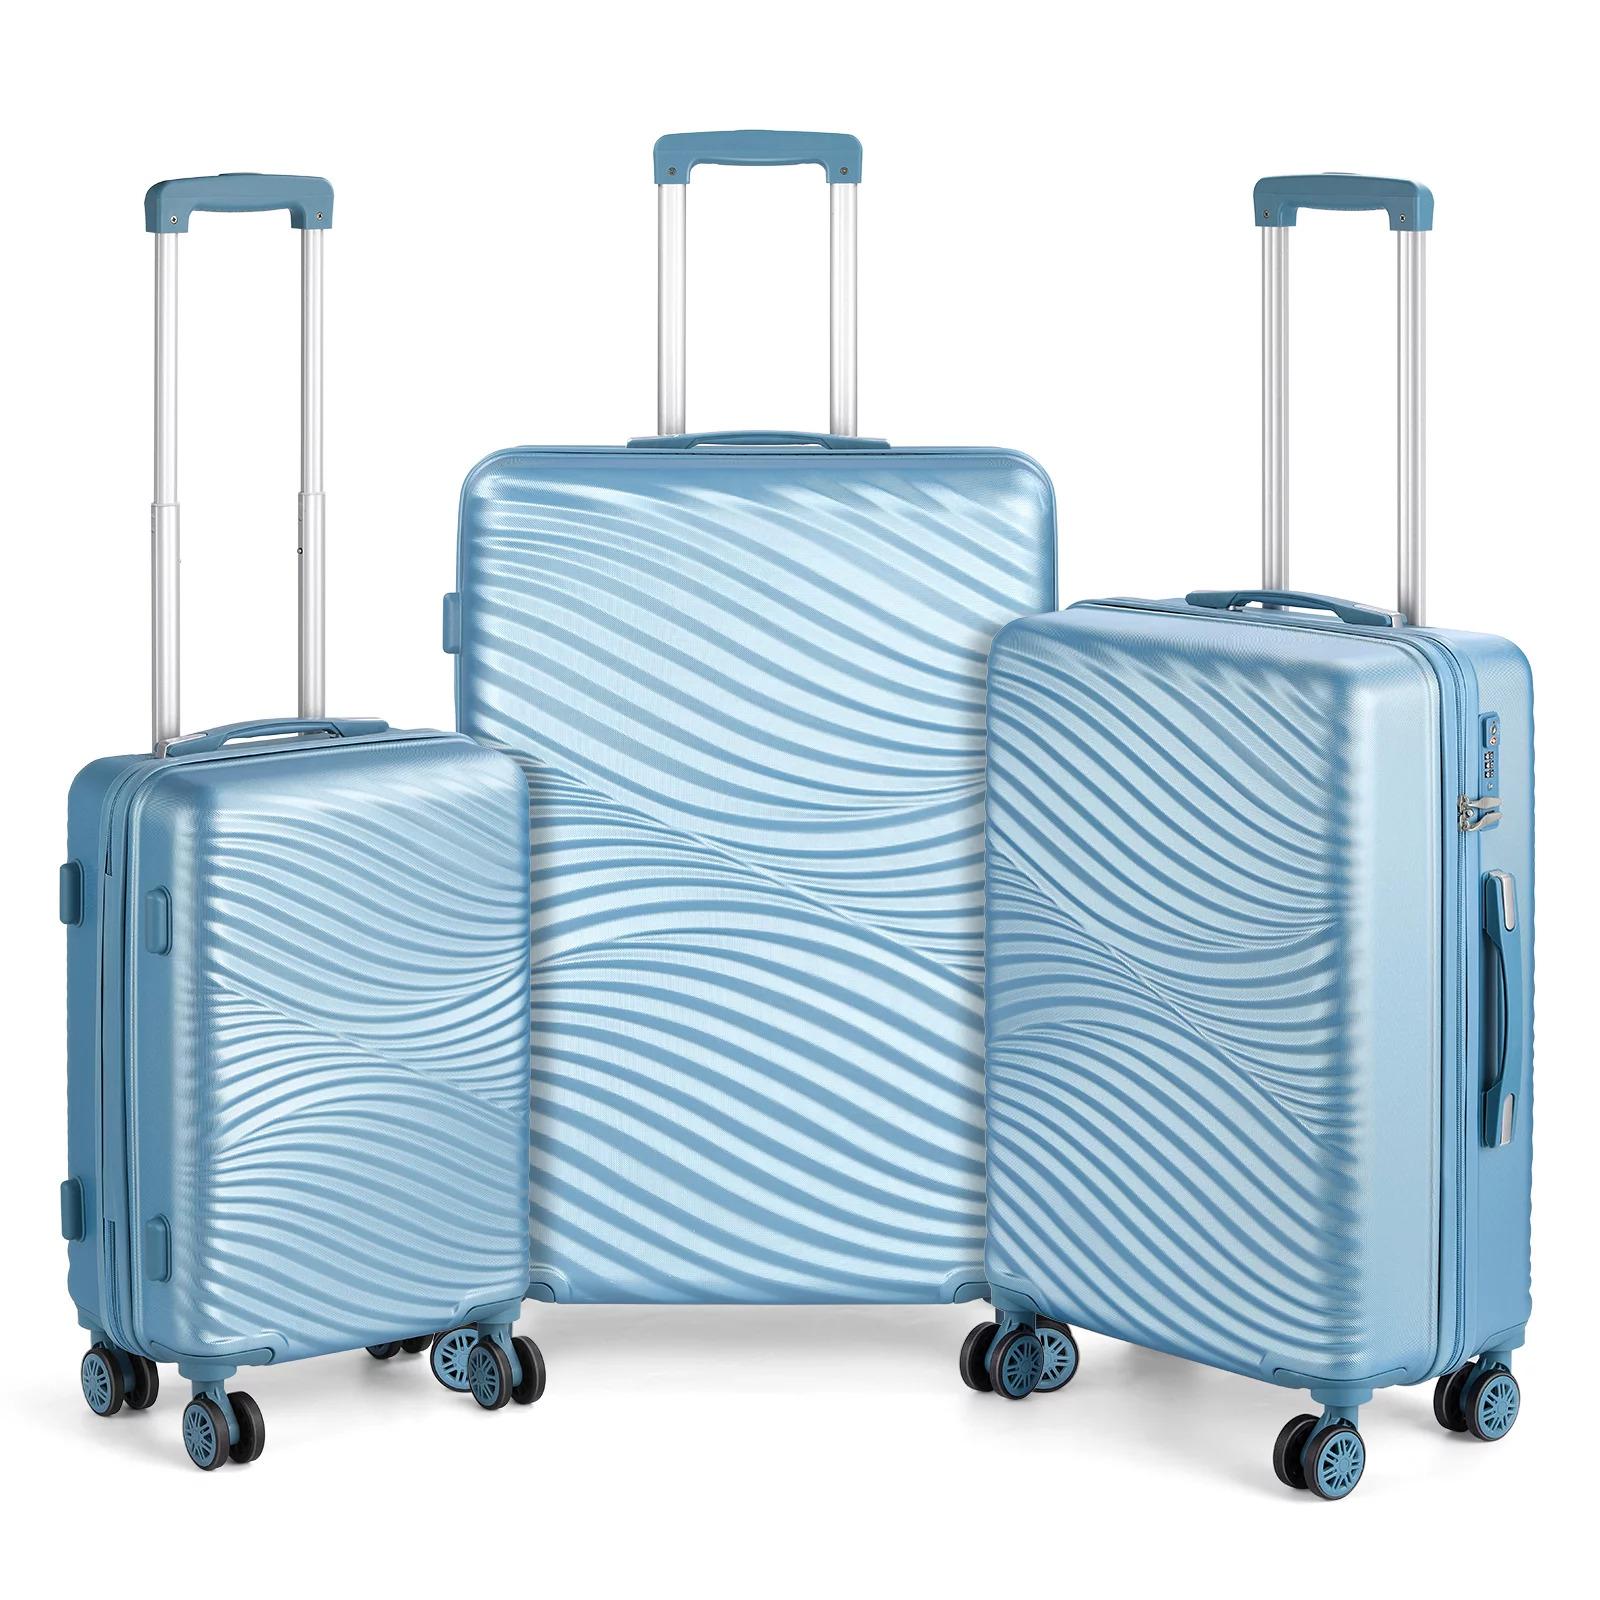 Hikolayae Hardside 3-Piece Luggage Set for $103 Shipped